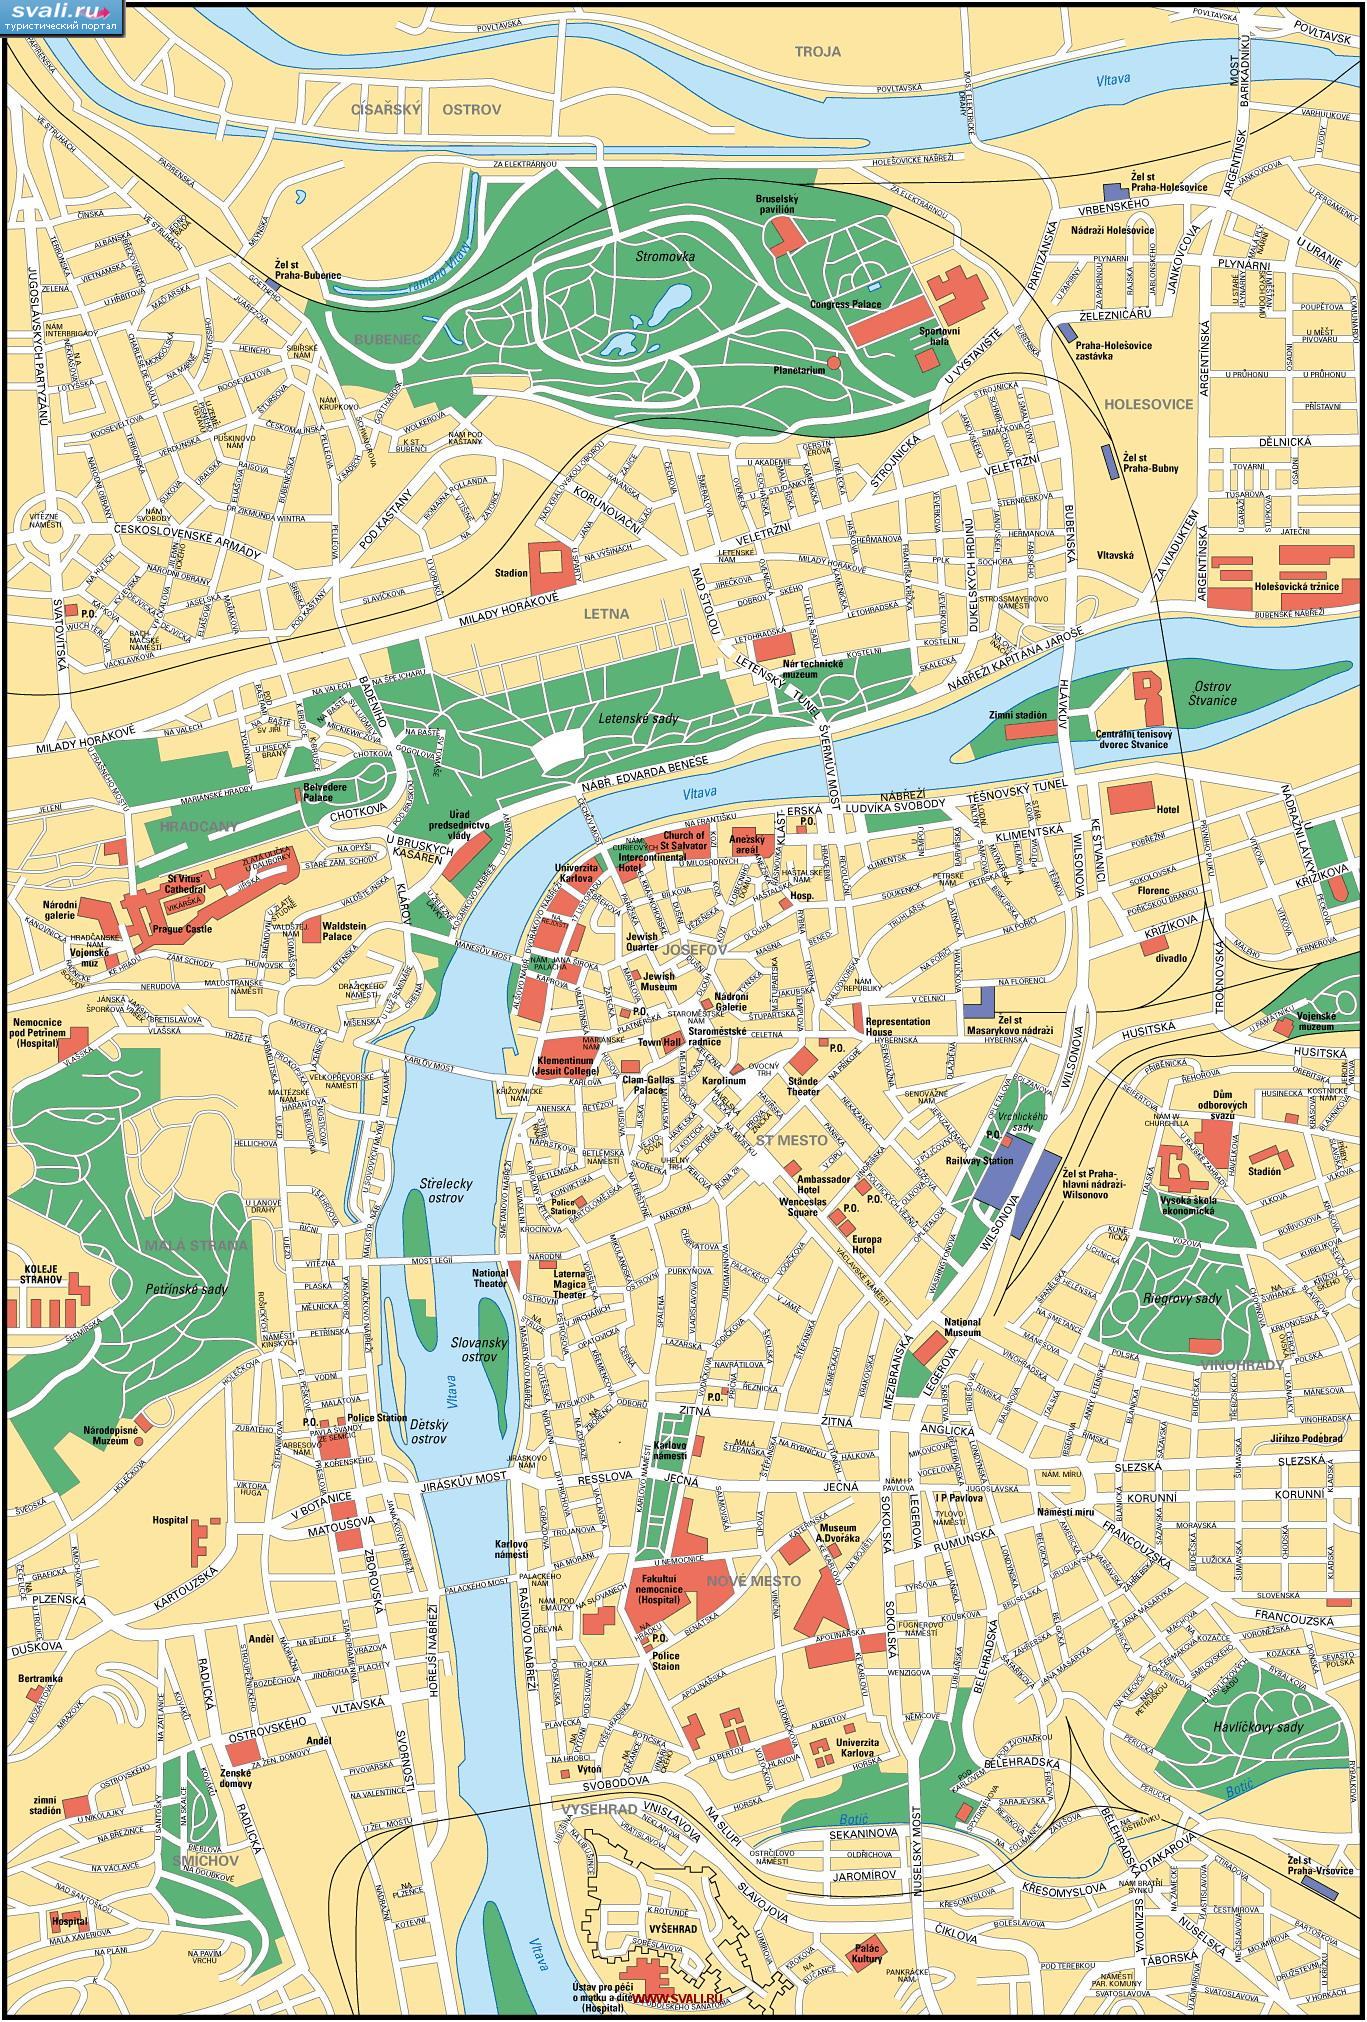 Туристическая карта центра Праги, Чехия (чеш.)